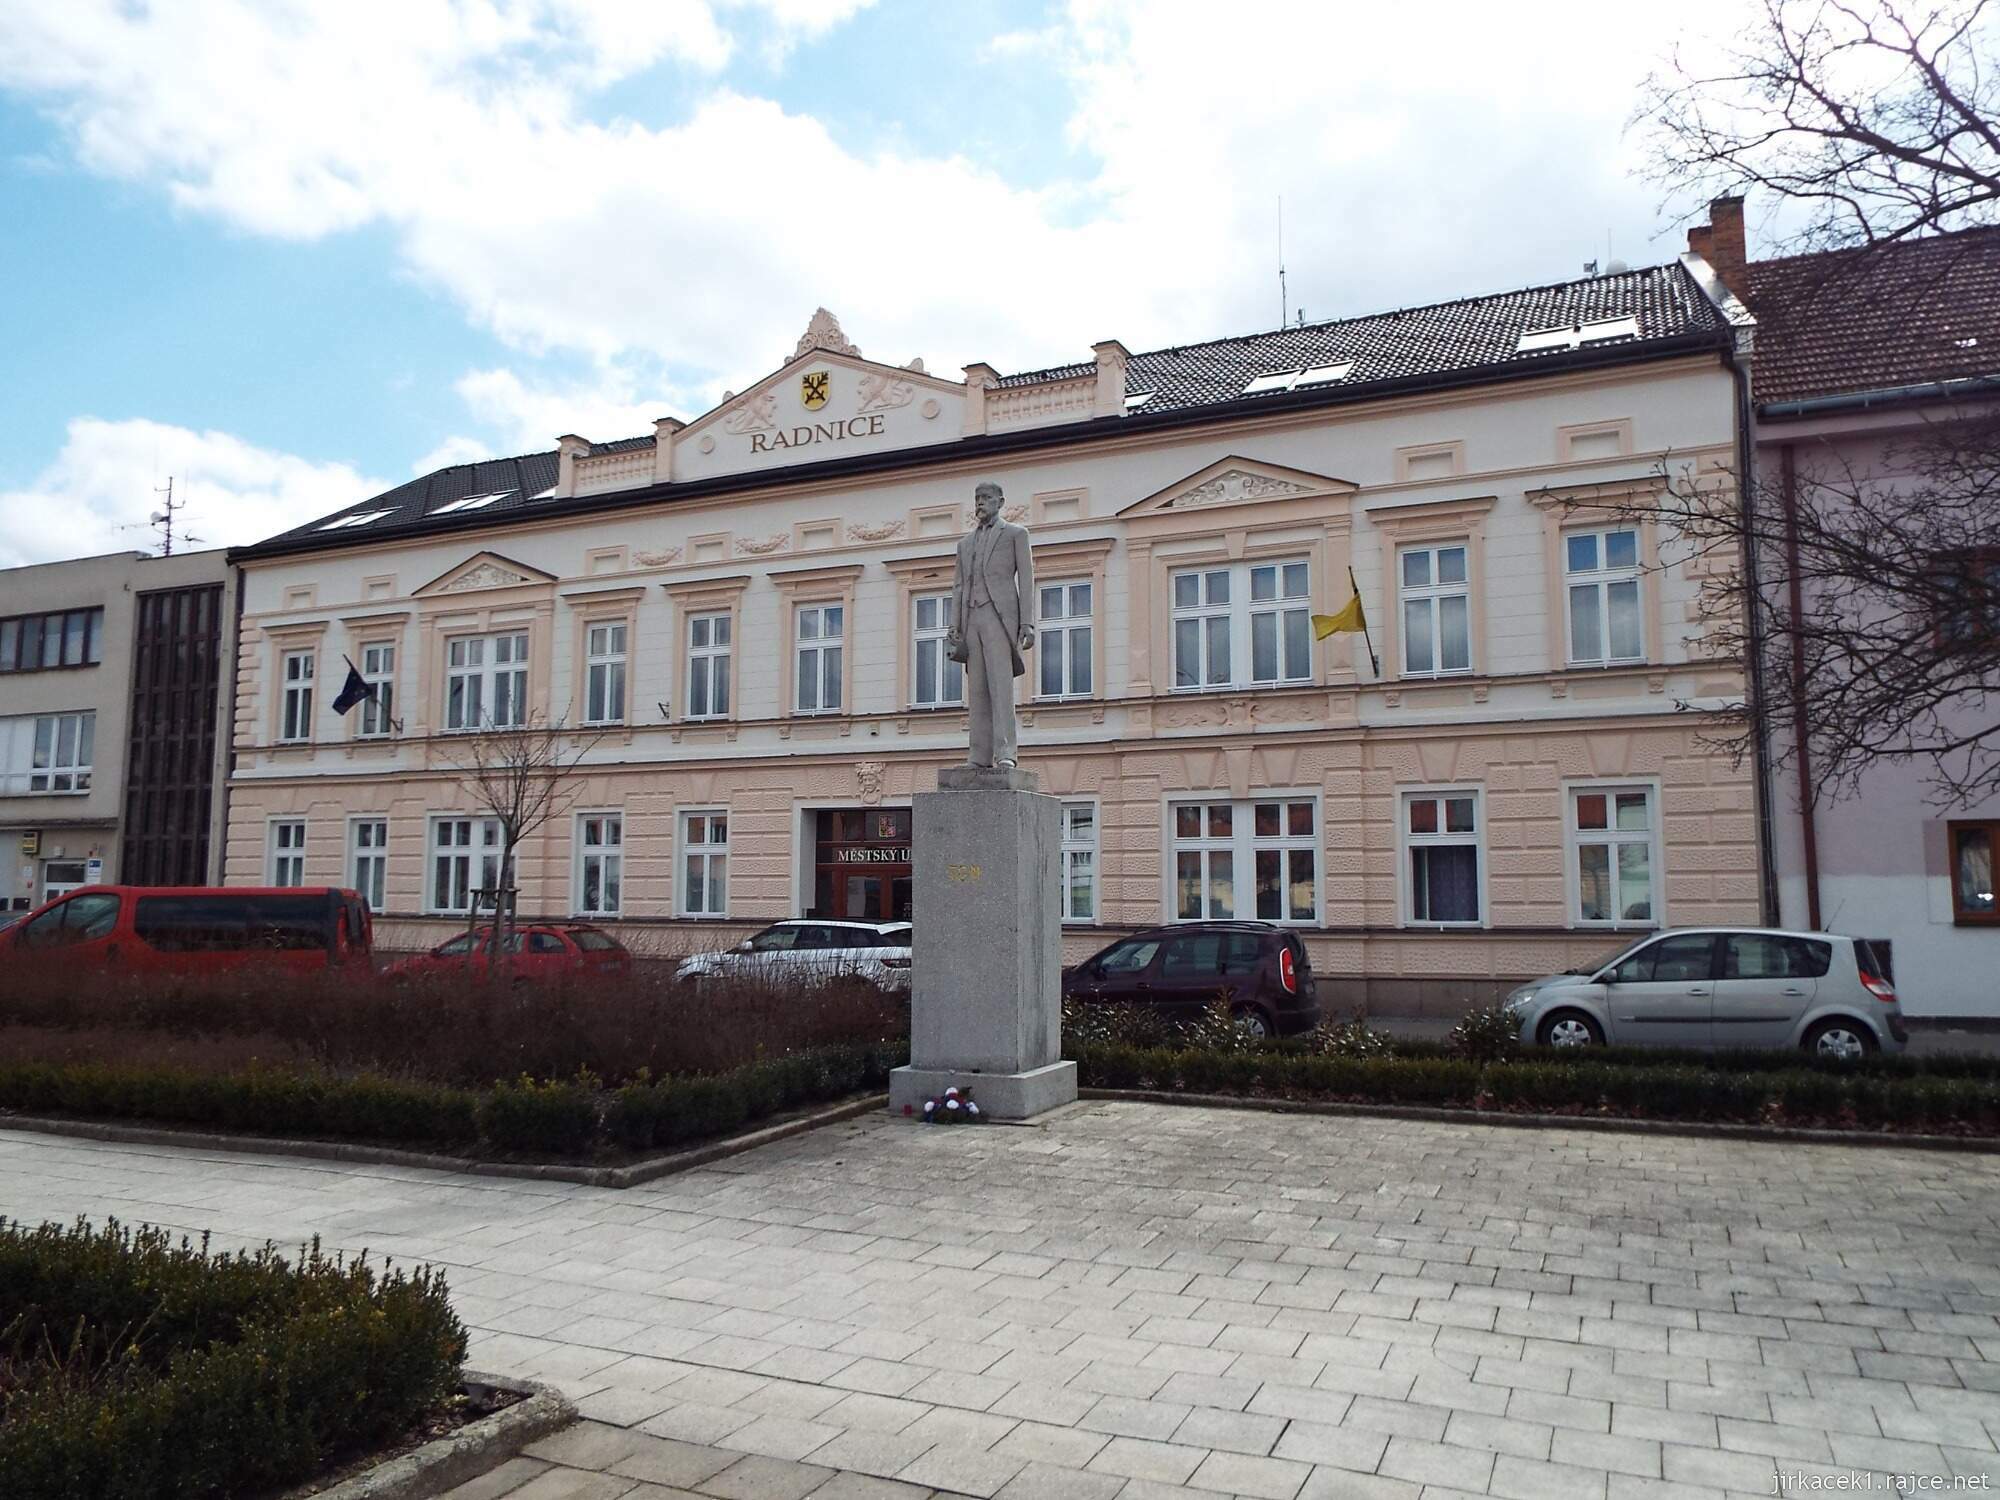 27 - Letovice - Masarykovo nám. 11 - socha Masaryka před radnicí